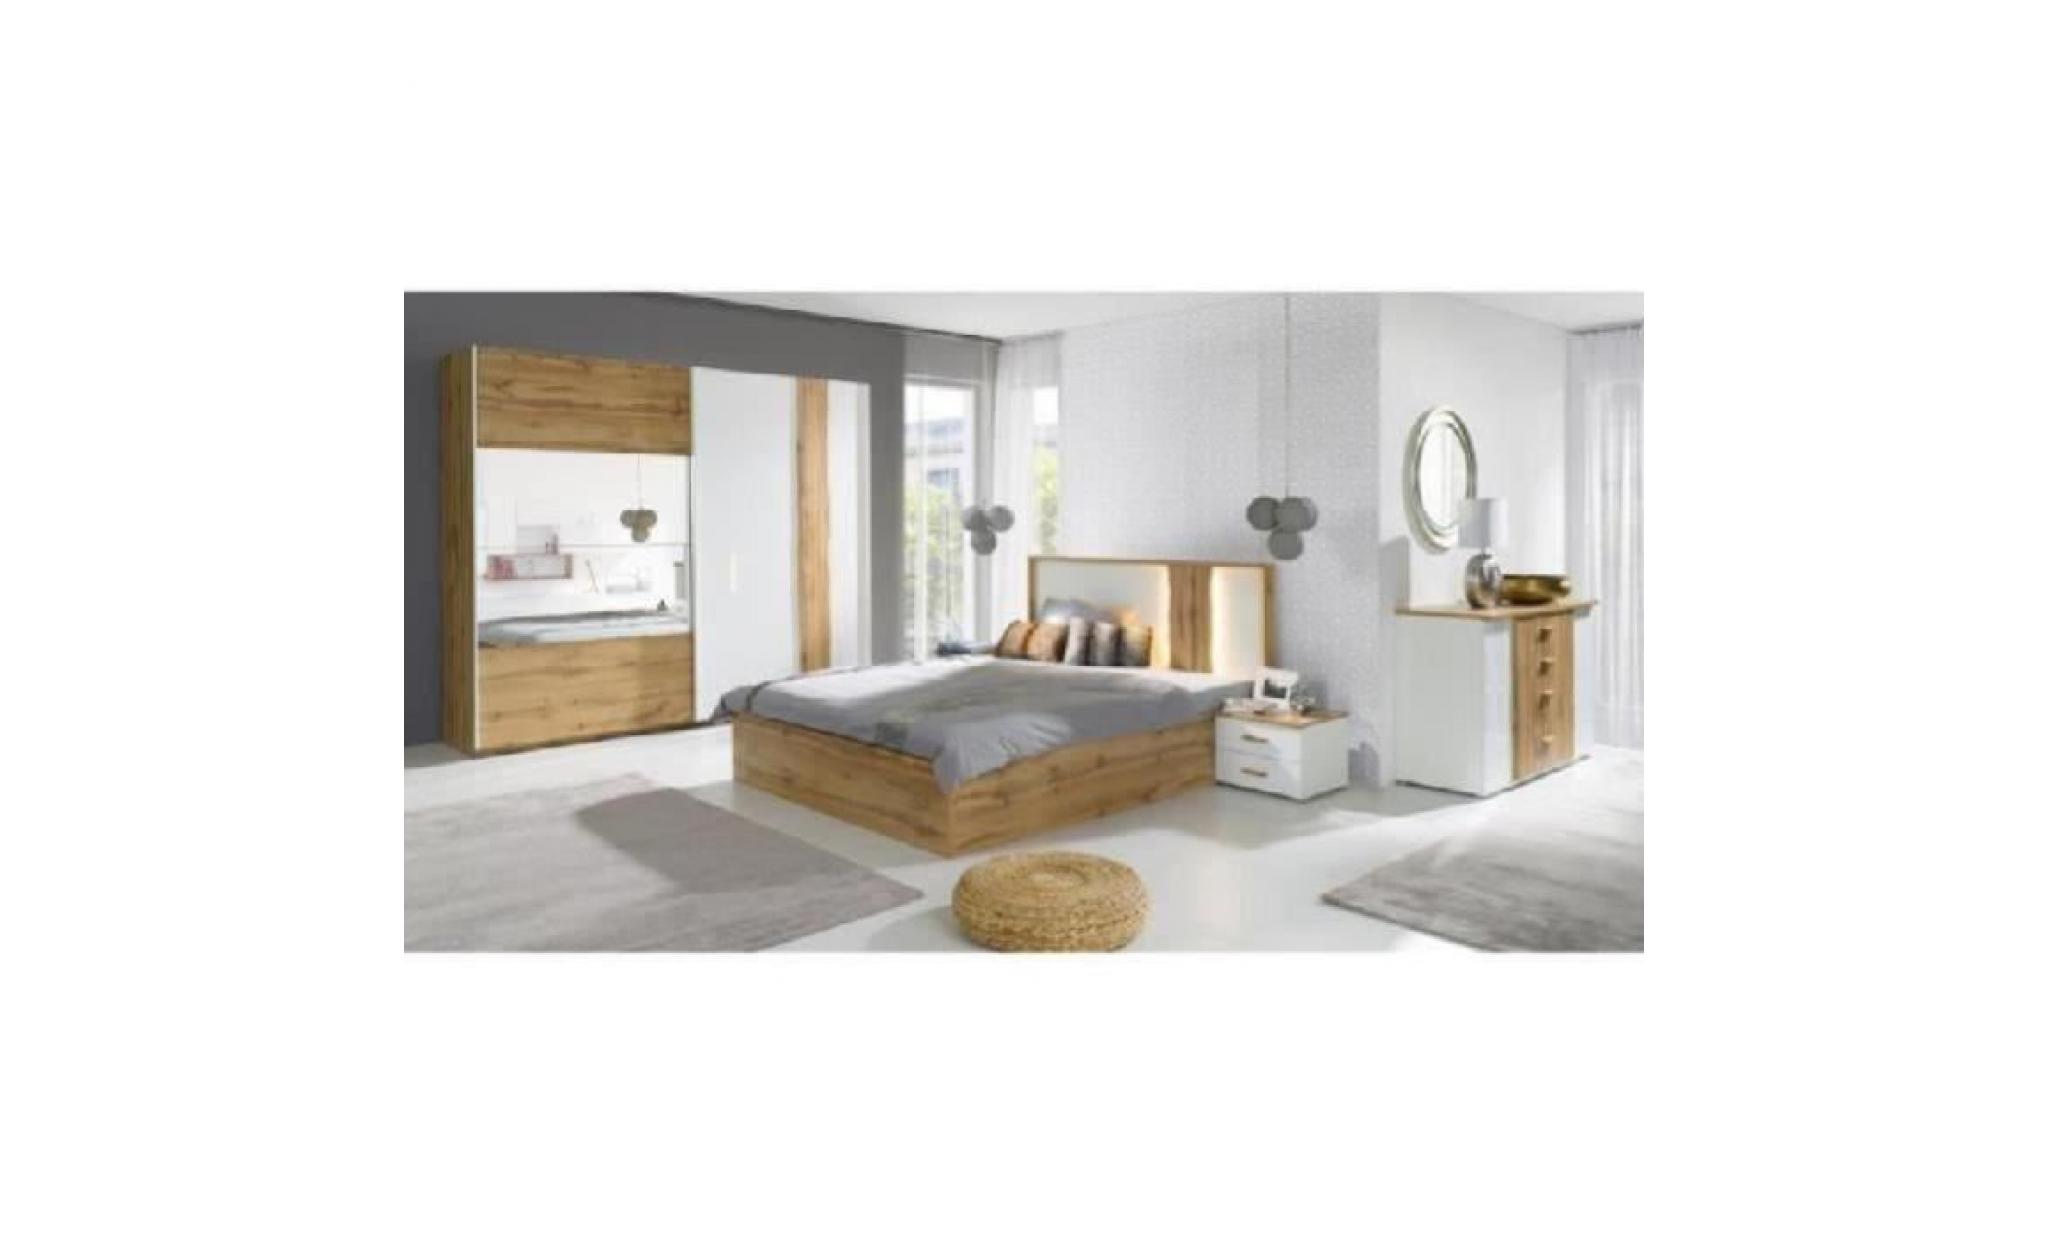 price factory chambre à coucher complète wood chêne et blanc. lit 160x200 cm + sommier + armoire en 200 cm + commode + 2 chevets